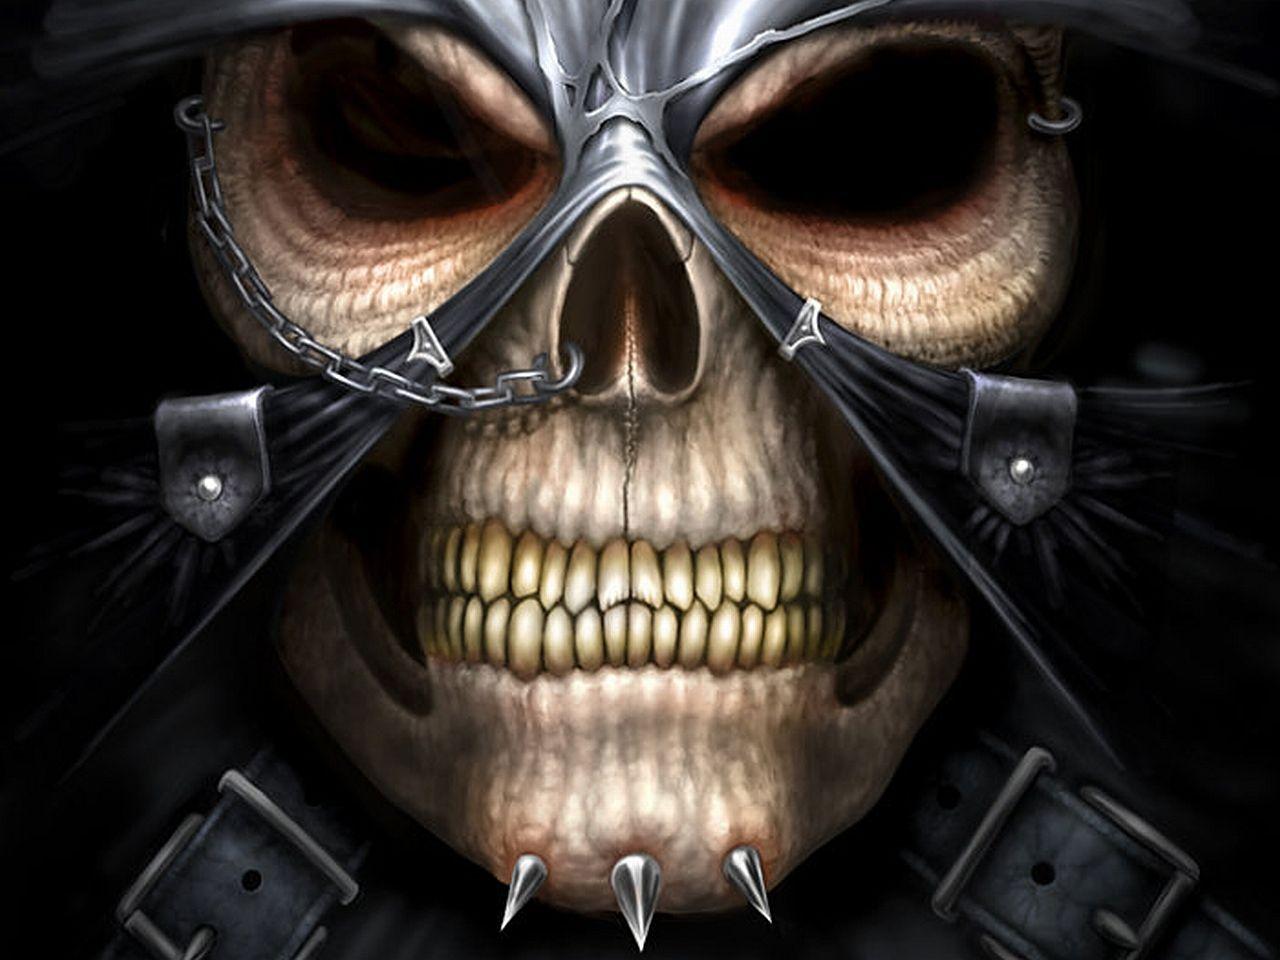 download skull and skeleton